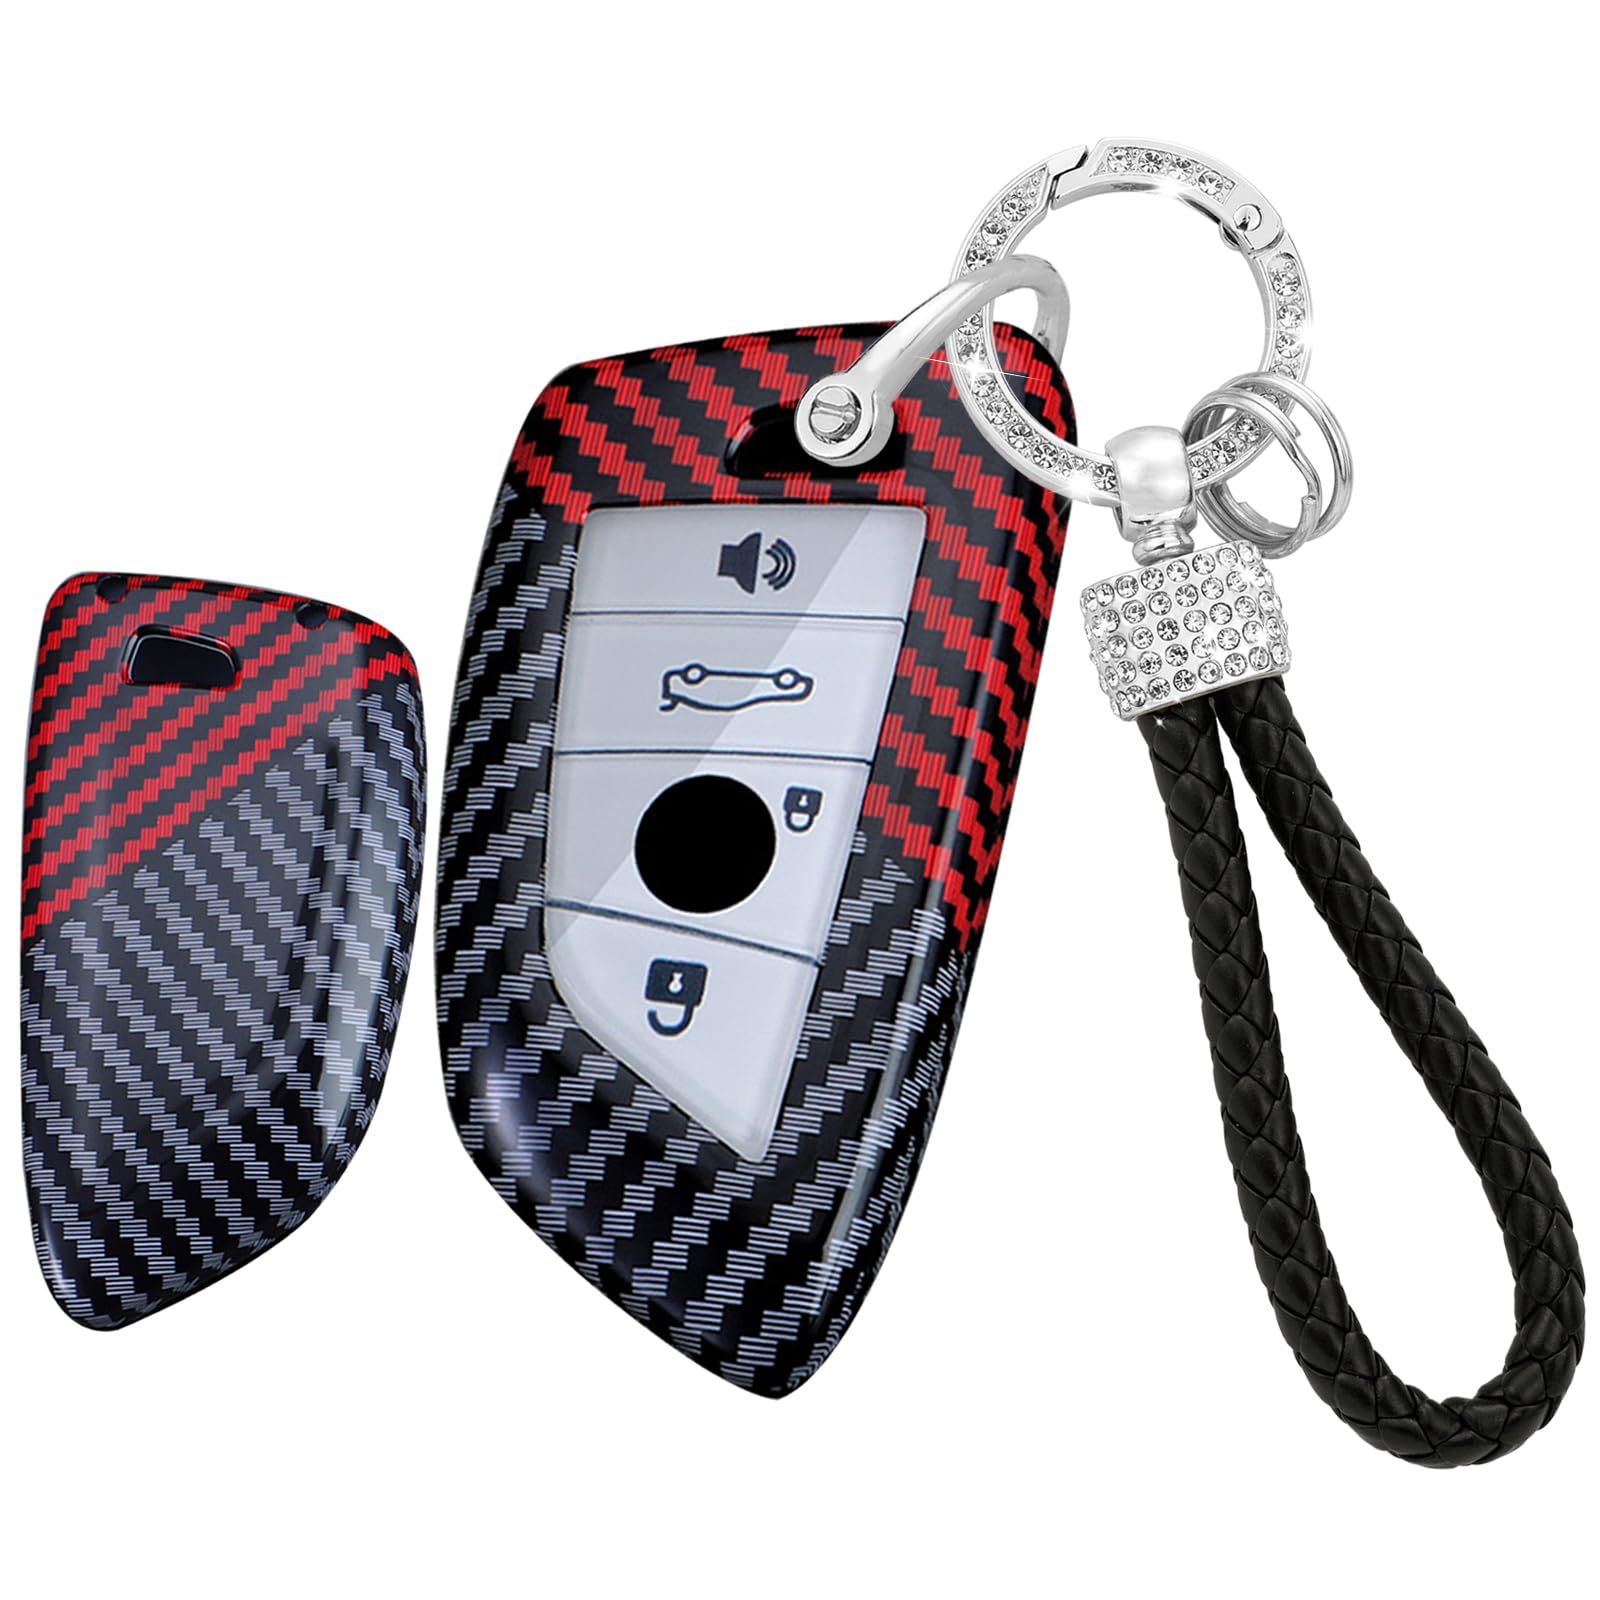 Ysbxitu 4 Tasten Schlüsselhülle für BMW Autoschlüssel Hülle mit Schlüsselanhänger Passt für BMW 1er 2er 3er 5er 6er F31 G30 G31 GT G32 G11 G12 F39 F48 G01 G02 Schlüsselcase Schlüsseletui Keyless Rot von Ysbxitu